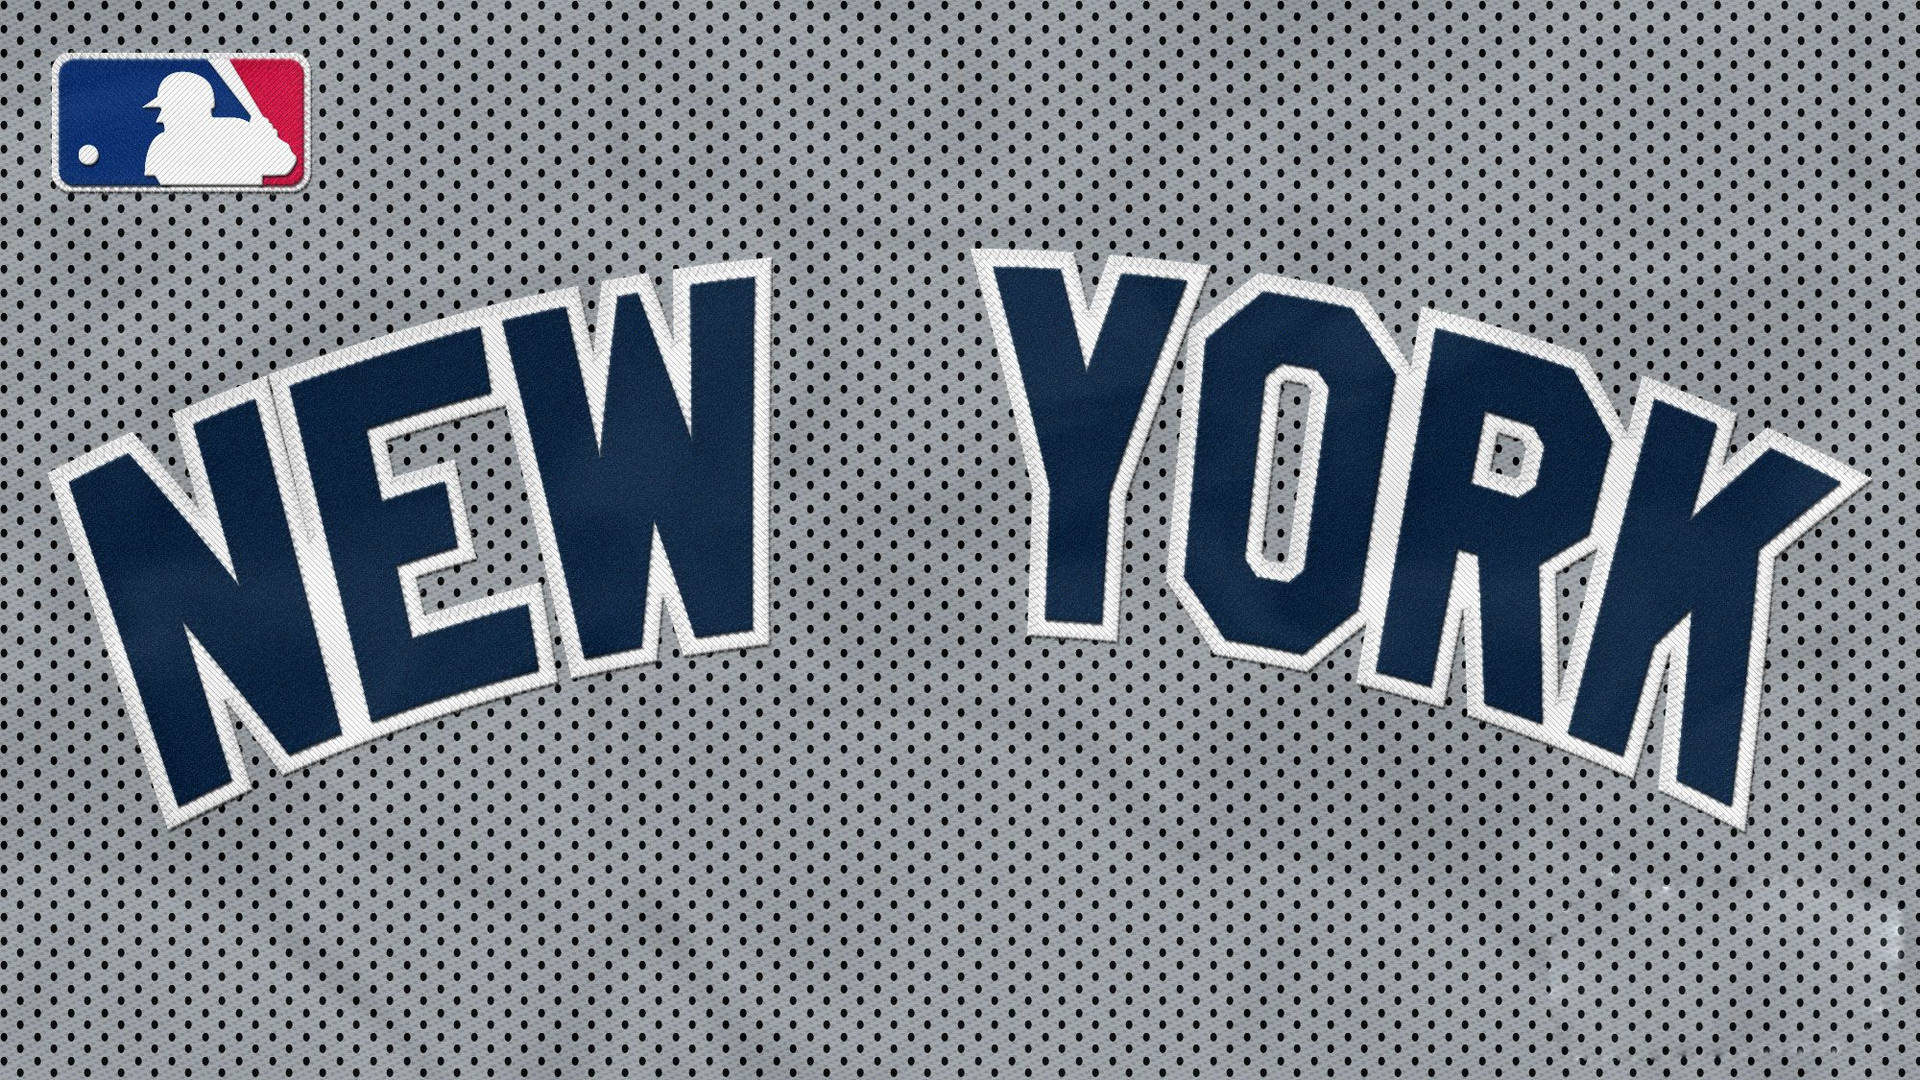 New York Yankees Wallpaper Hd